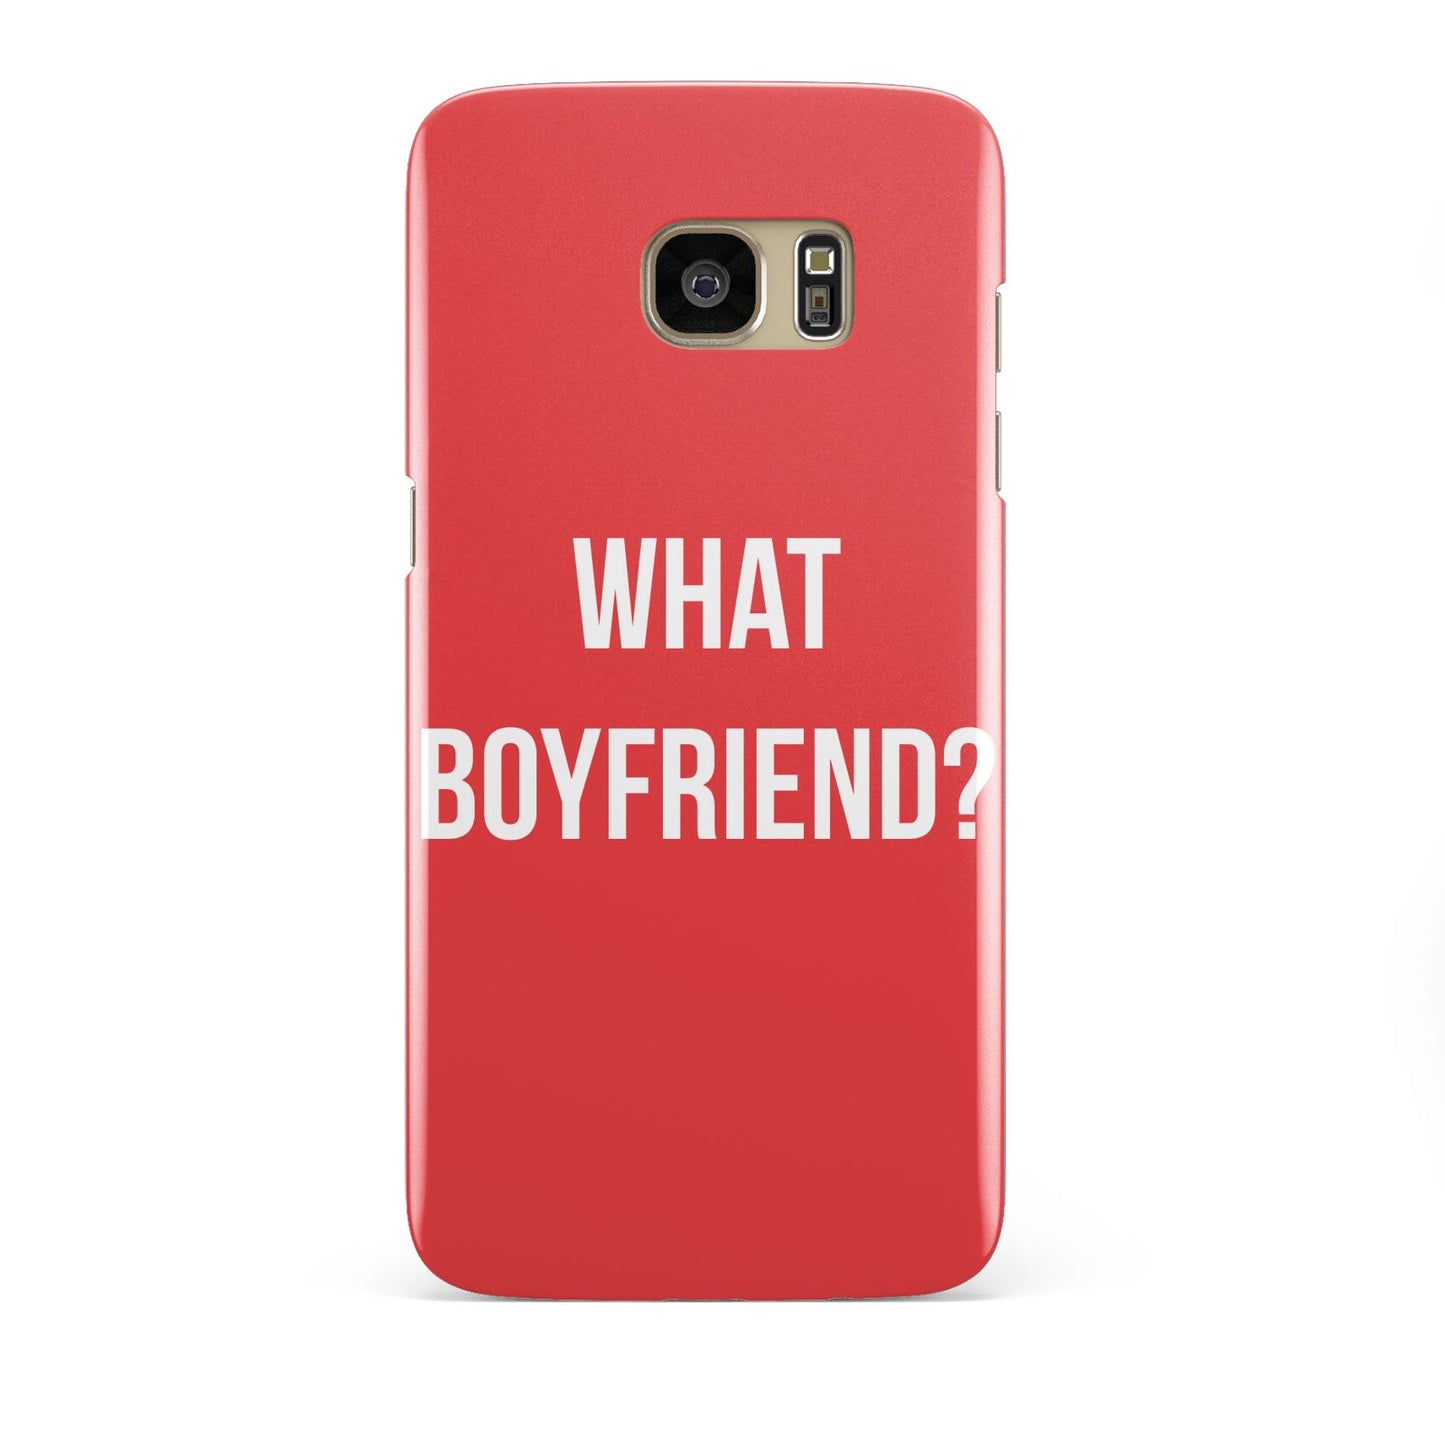 What Boyfriend Samsung Galaxy S7 Edge Case